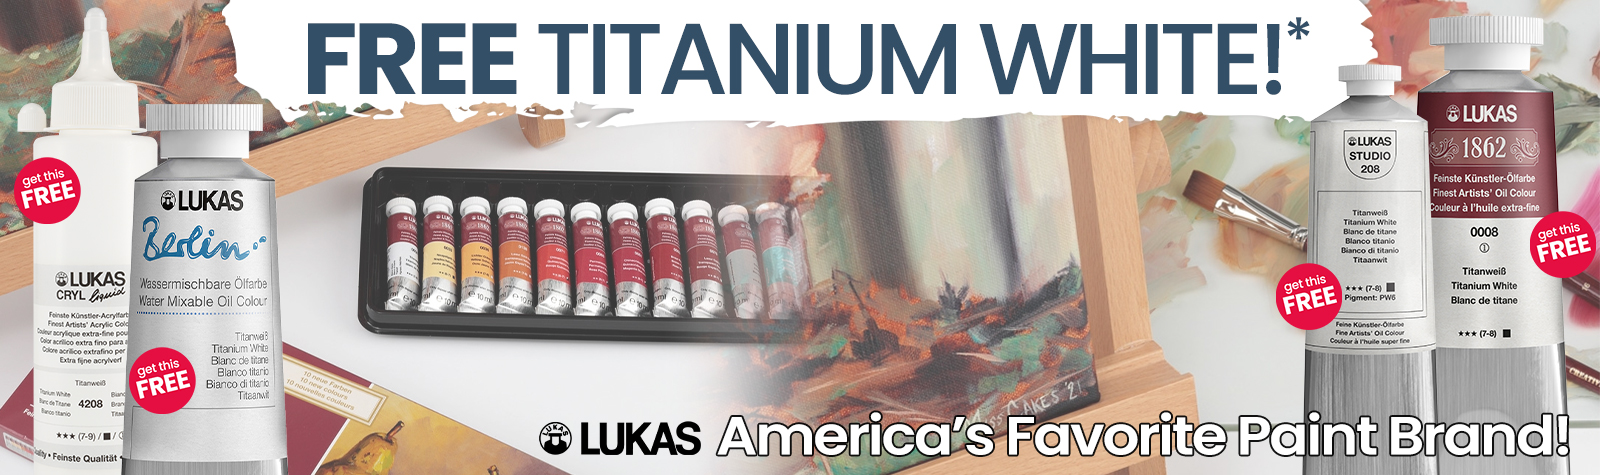 Lukas Free Titanium White Sale